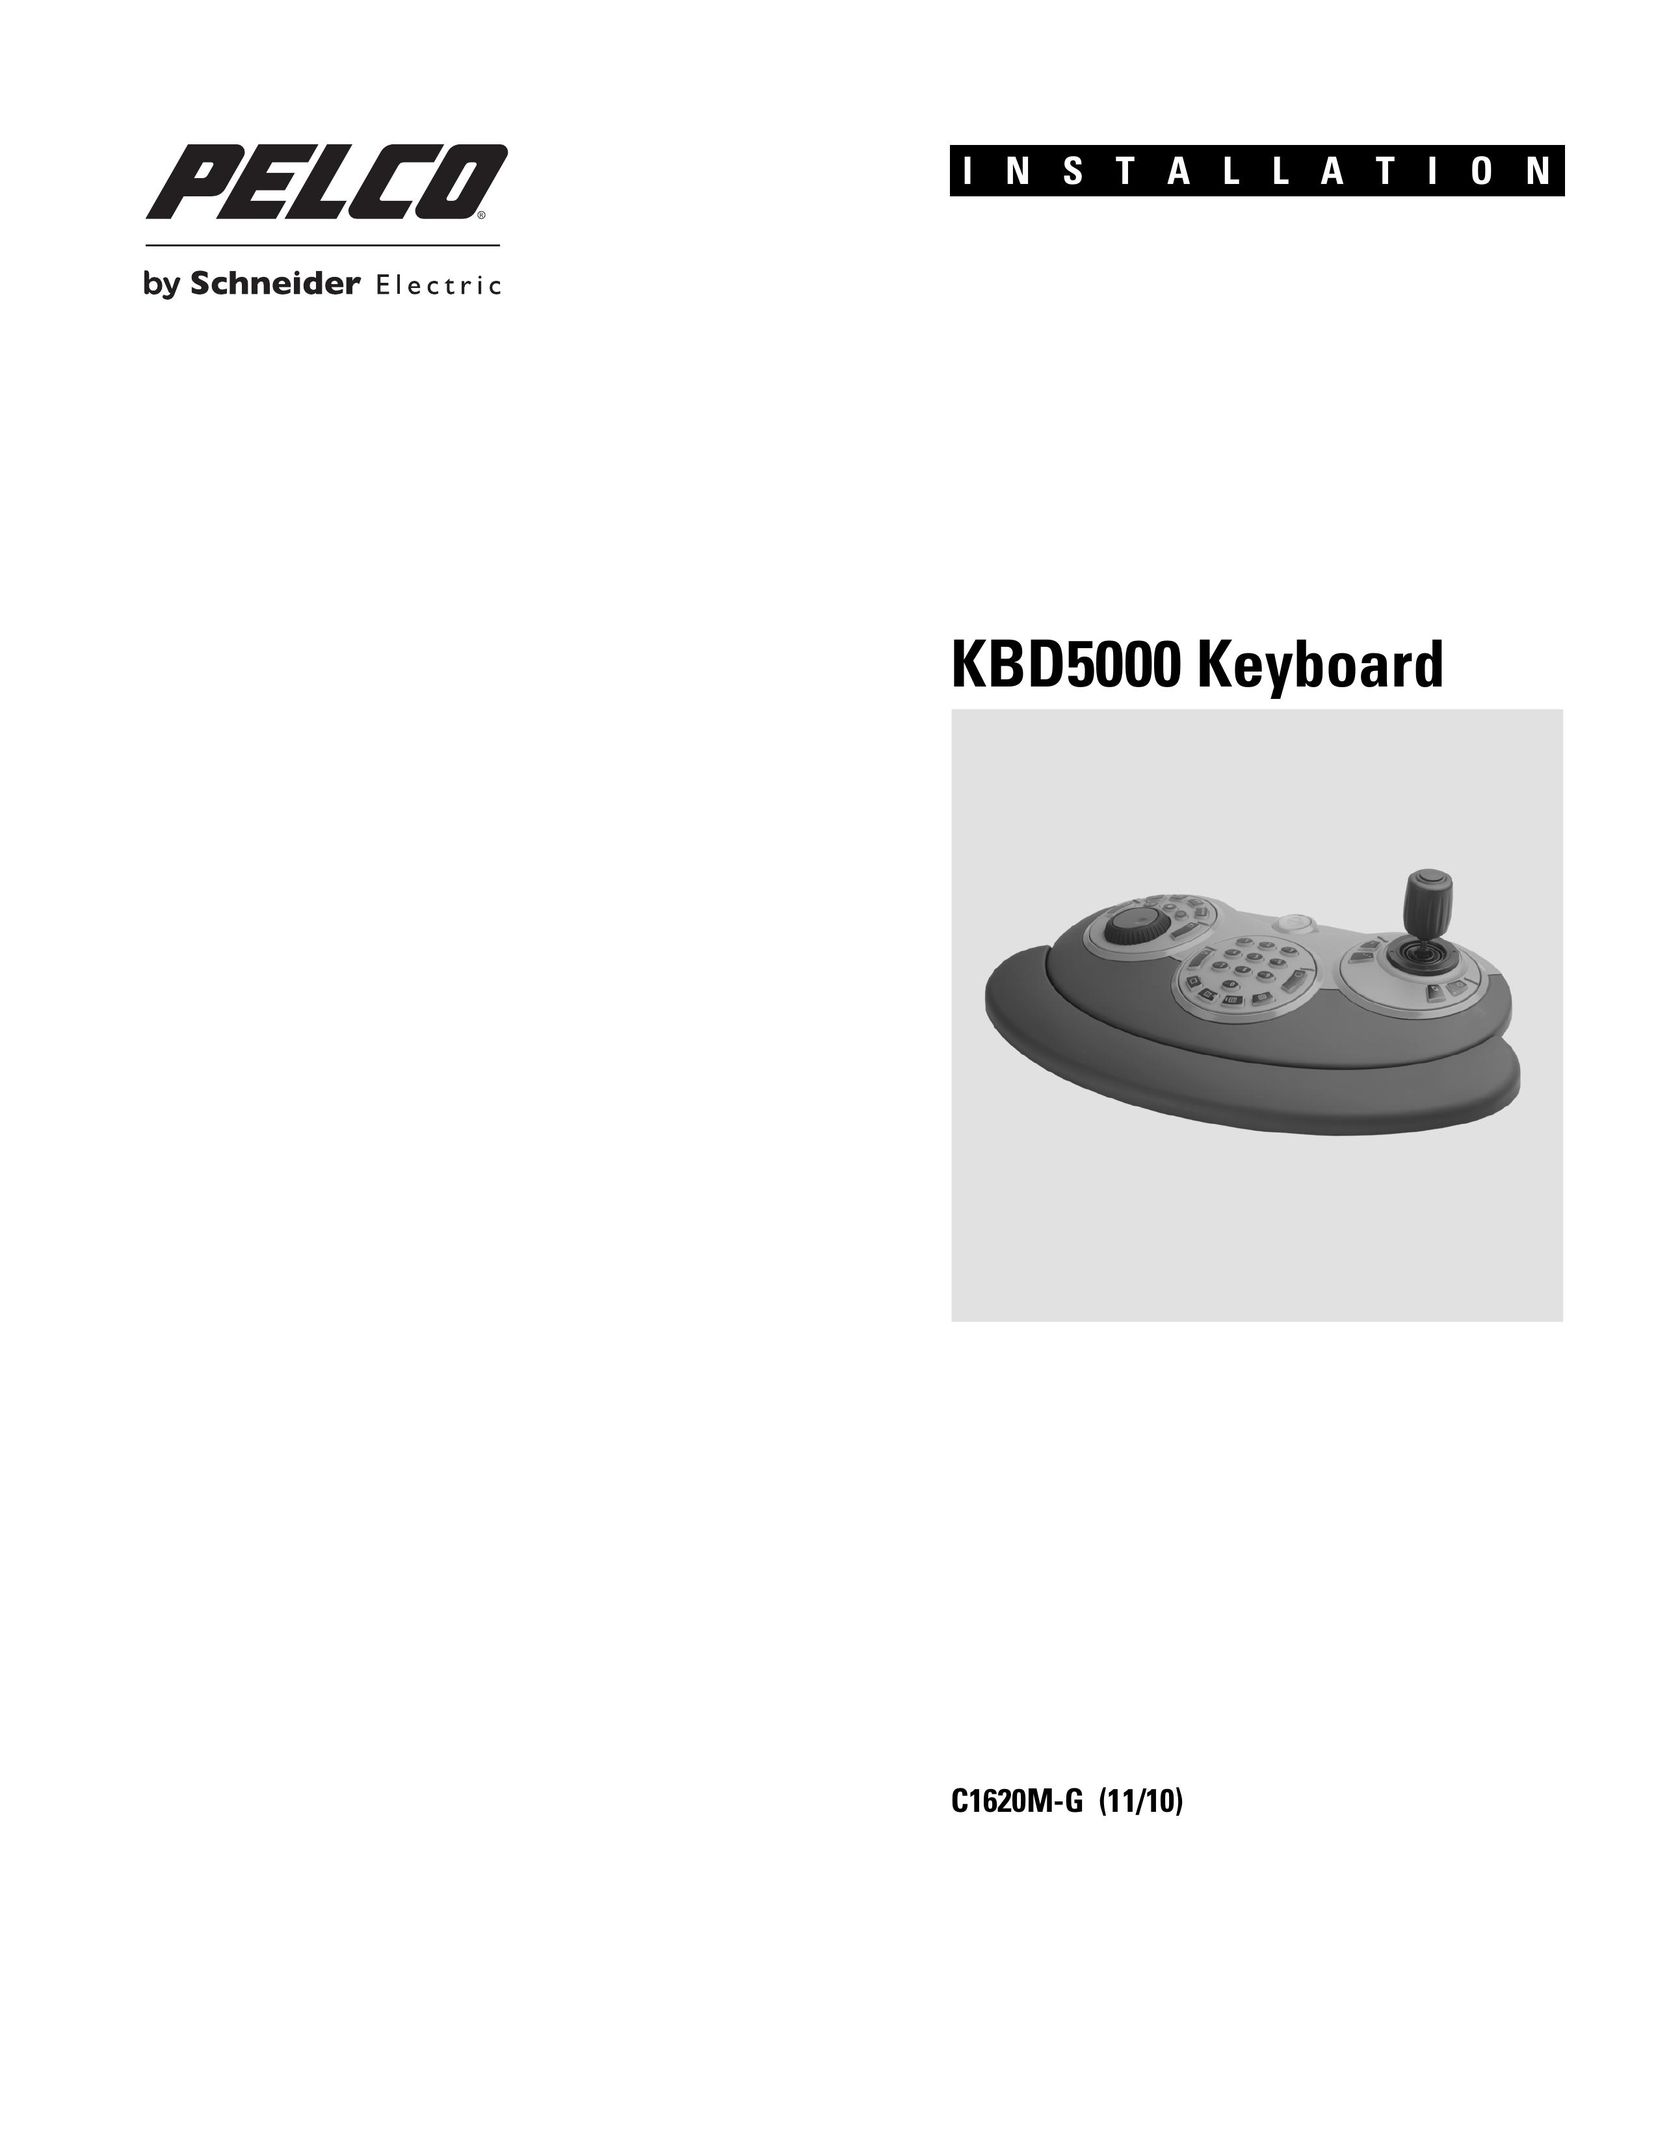 Pelco KBD5000 Video Game Keyboard User Manual